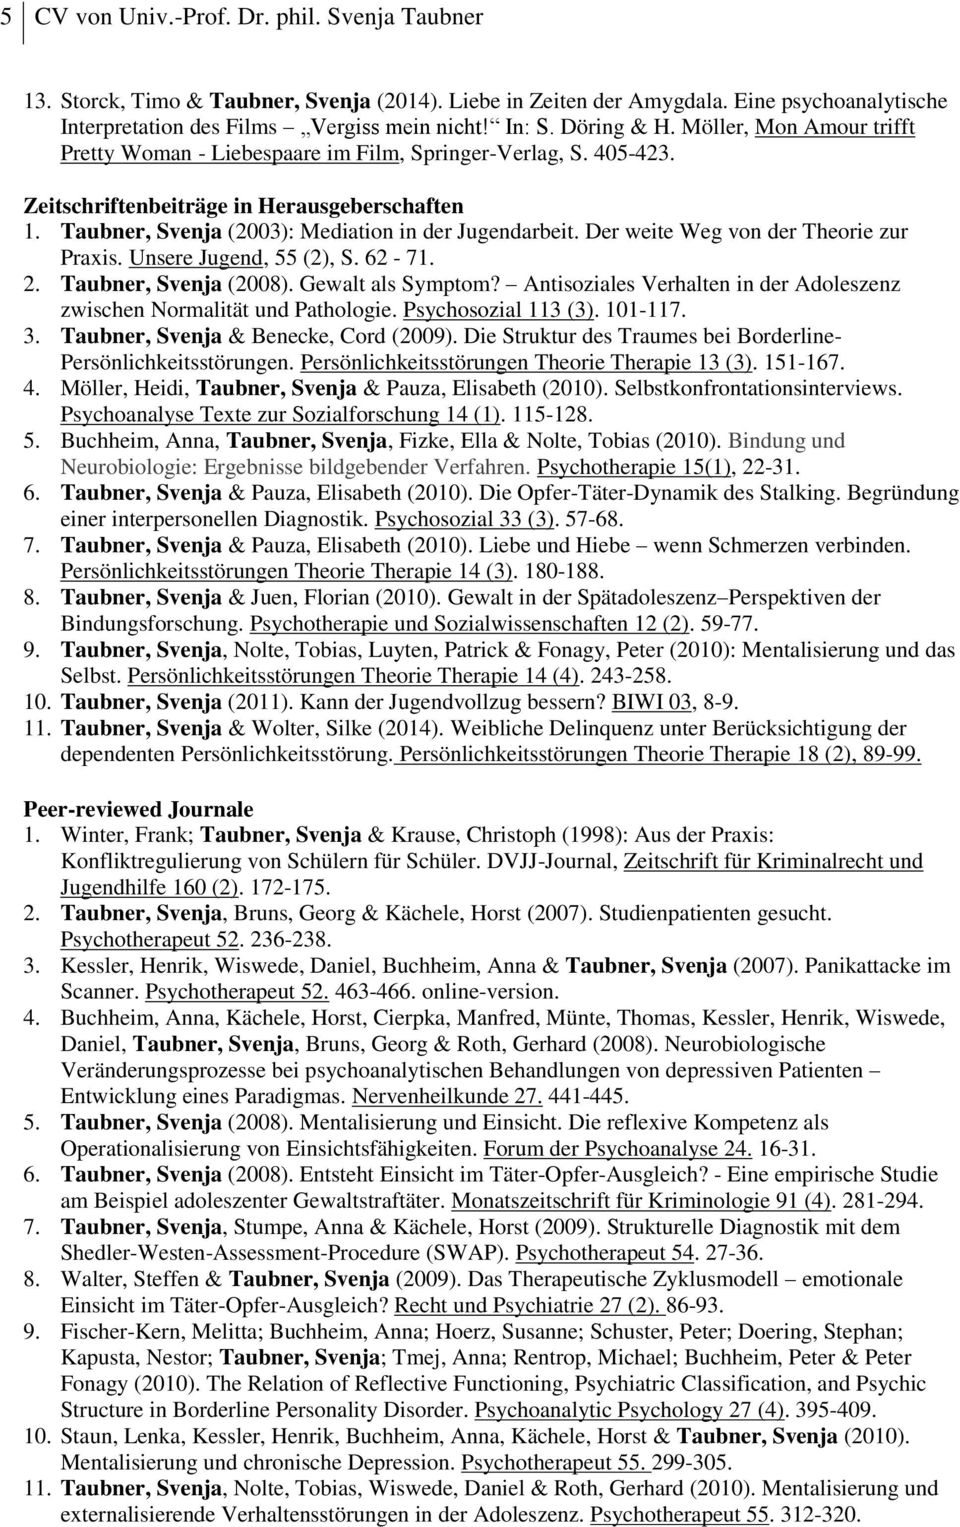 Taubner, Svenja (2003): Mediation in der Jugendarbeit. Der weite Weg von der Theorie zur Praxis. Unsere Jugend, 55 (2), S. 62-71. 2. Taubner, Svenja (2008). Gewalt als Symptom?